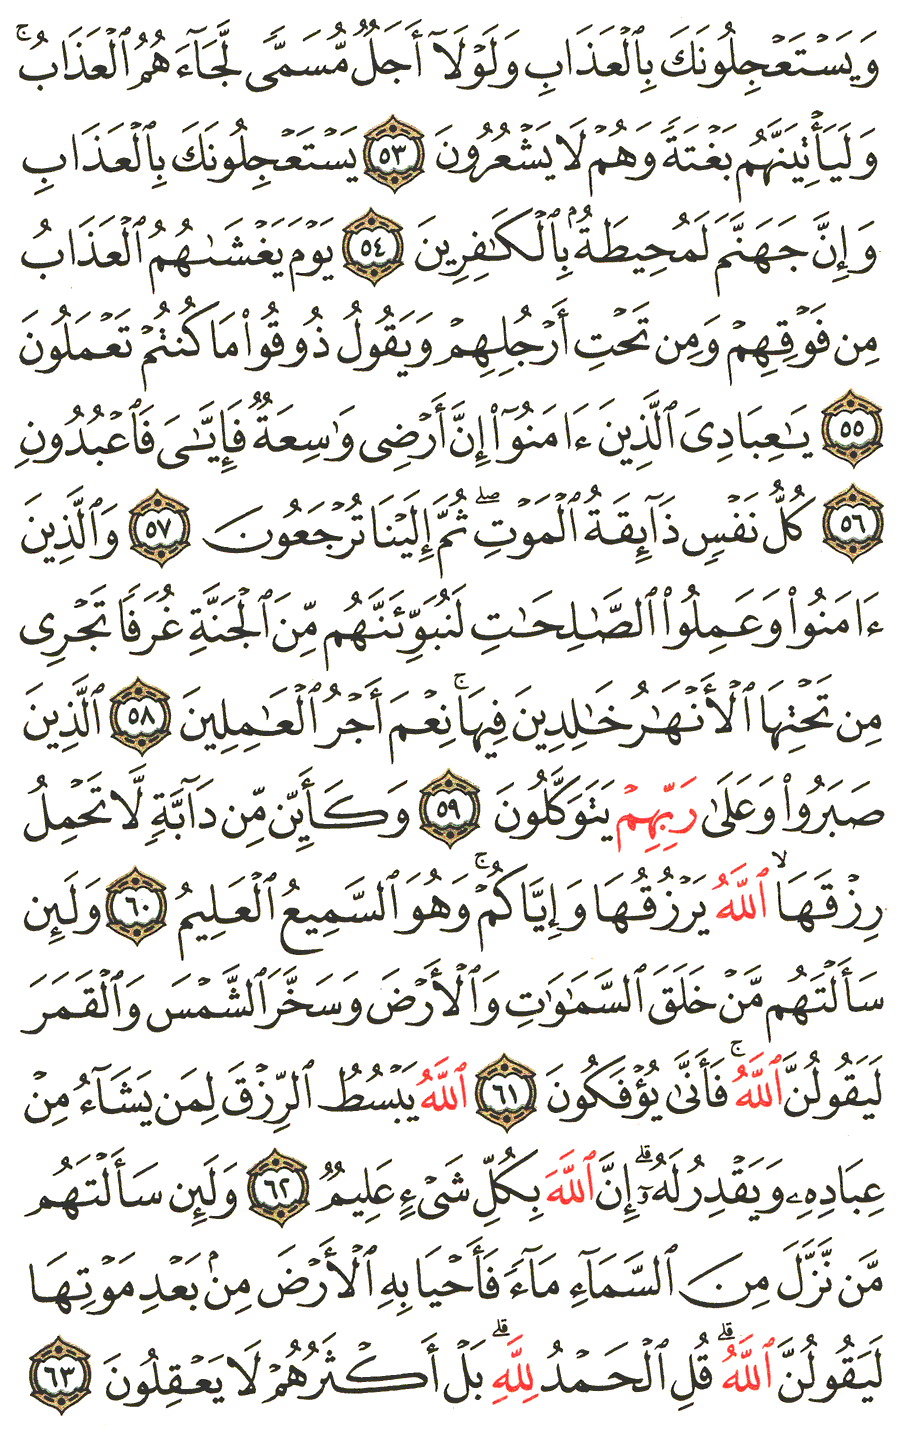 الصفحة رقم 403 من القرآن الكريم مكتوبة من المصحف